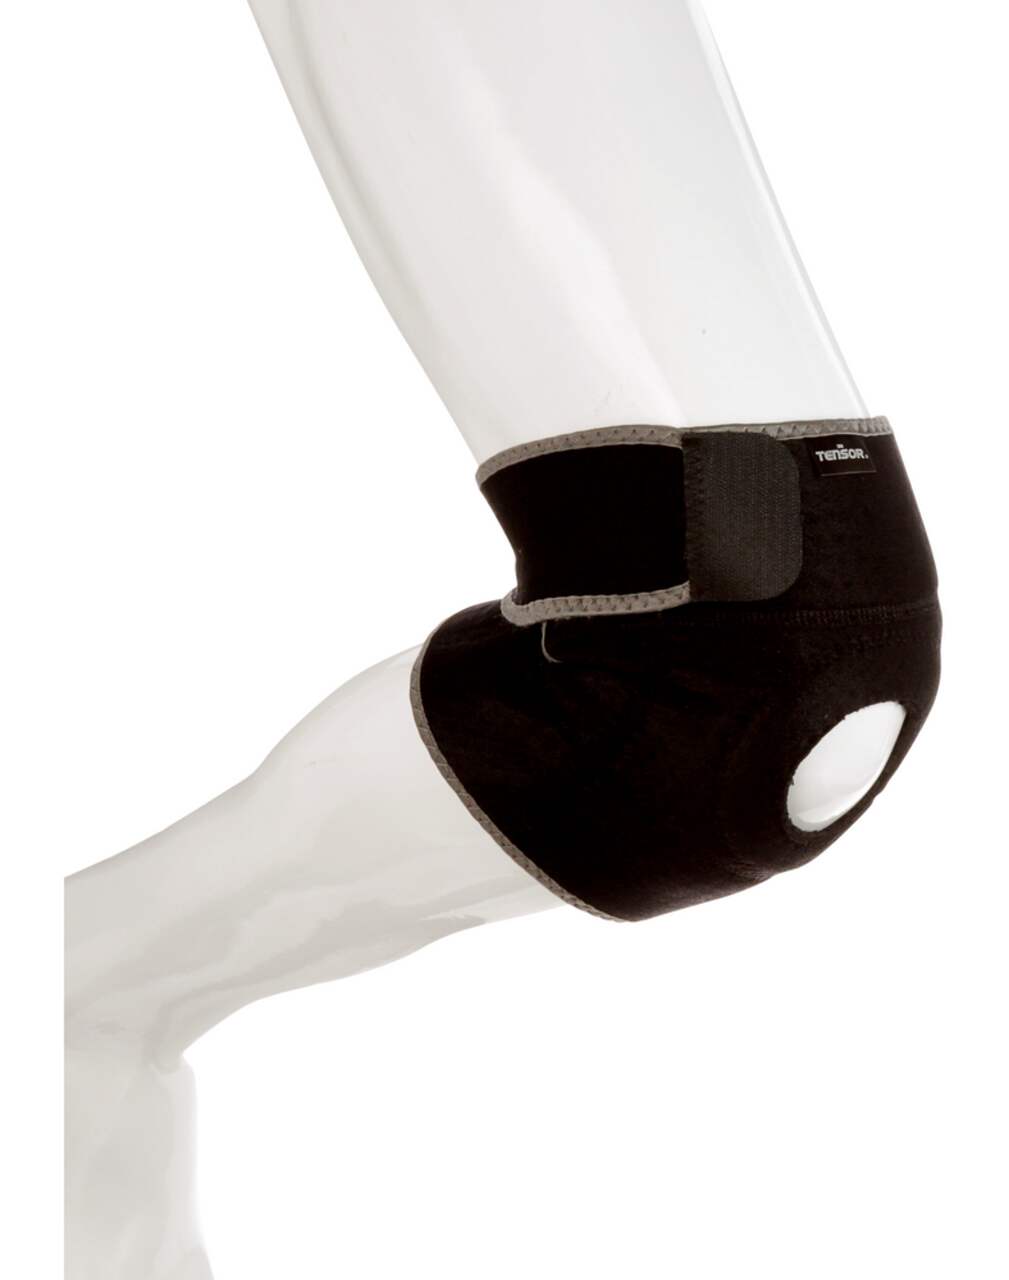 Tensor Hinged Knee Brace, 48579-CA, Black, Adjustable, 1 Per Pack 1 count